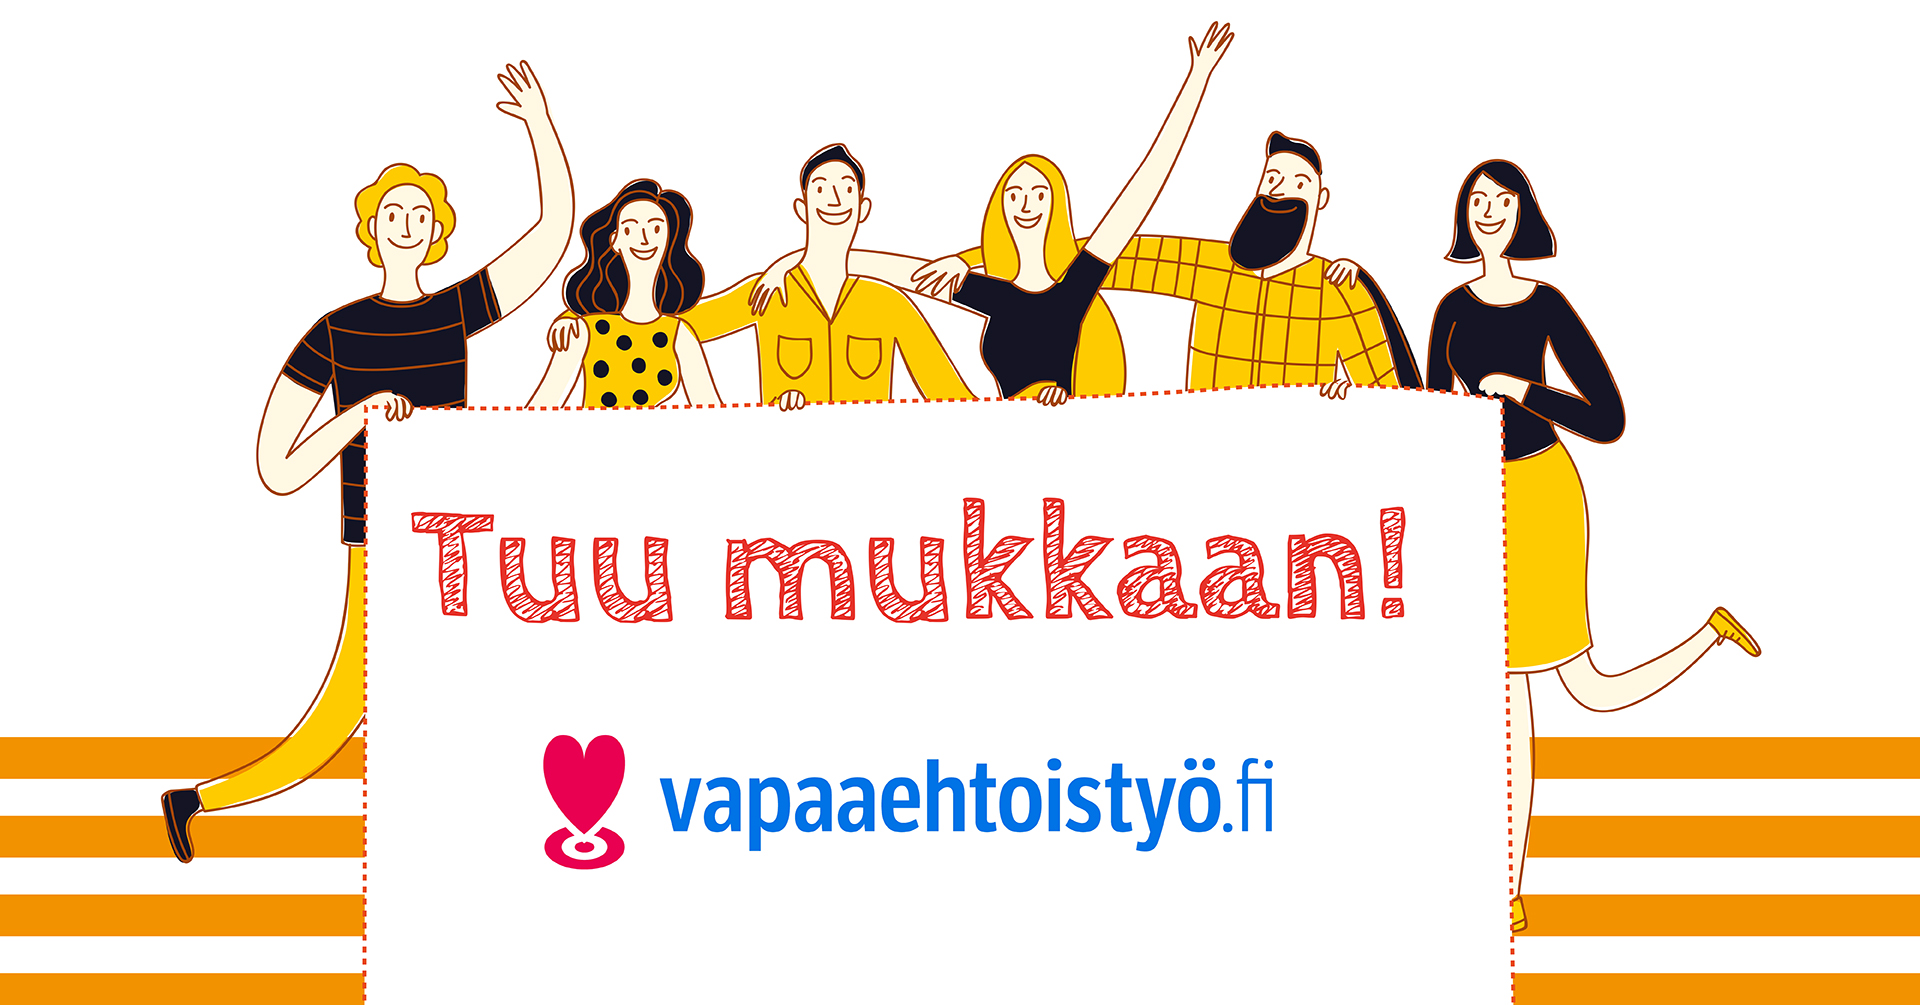 Kuvassa tekstit Tuu mukkaan! ja Vapaaehtoistyö.fi sekä joukko piirrettyjä, iloisia ihmisiä, miehiä ja naisia.